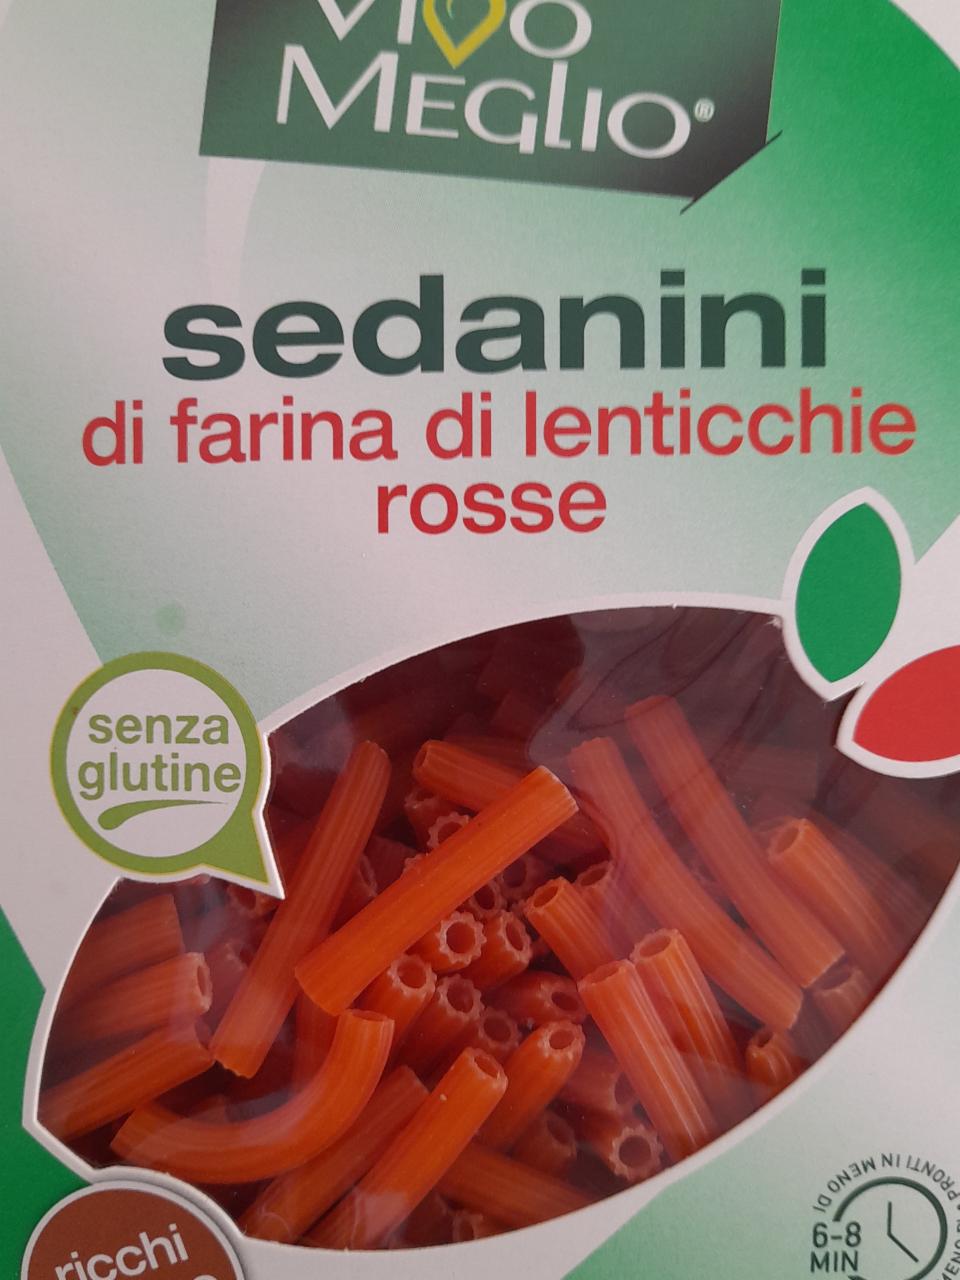 Fotografie - Sedanini di farina di lenticchie rosse Vivo Meglio